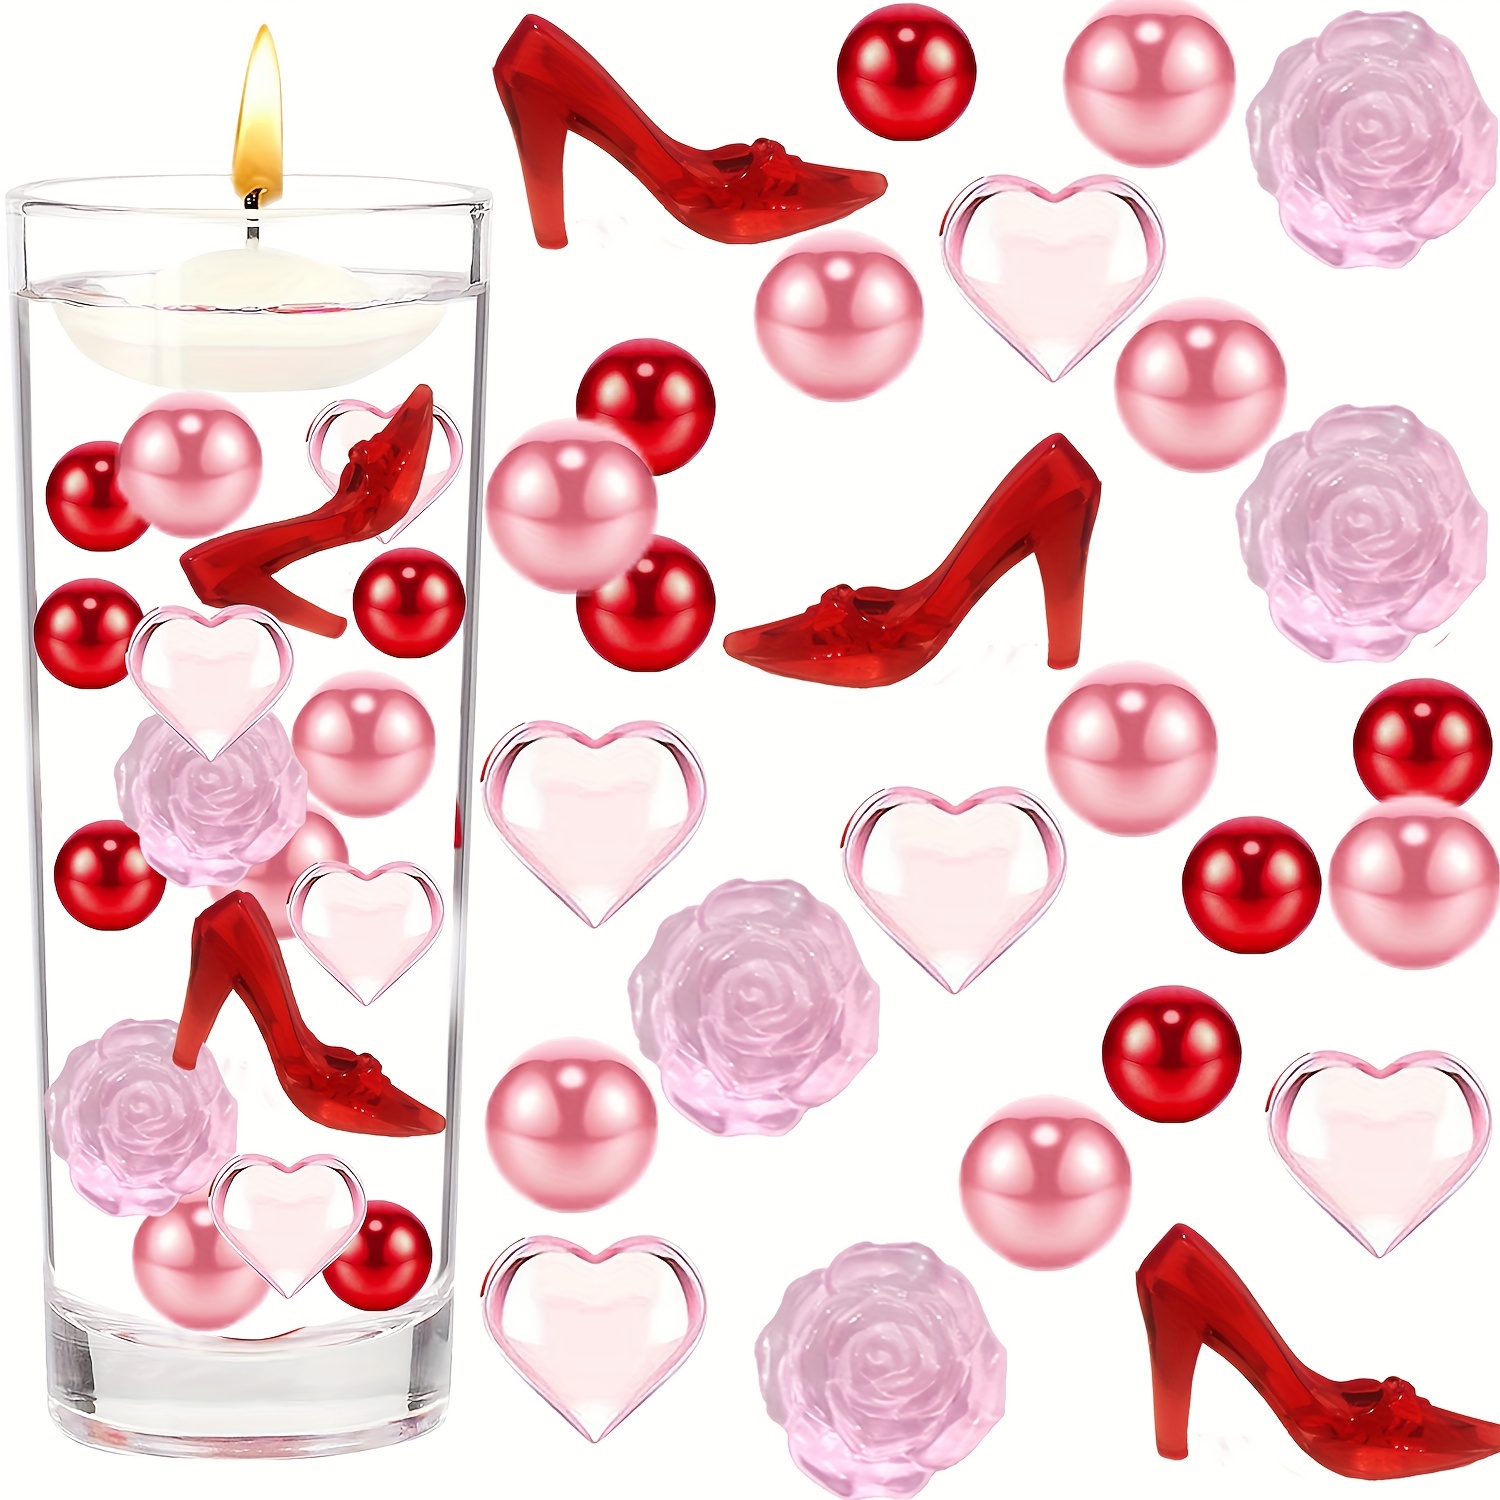  Altsuceser 6062Pcs Valentines Day Vase Filler